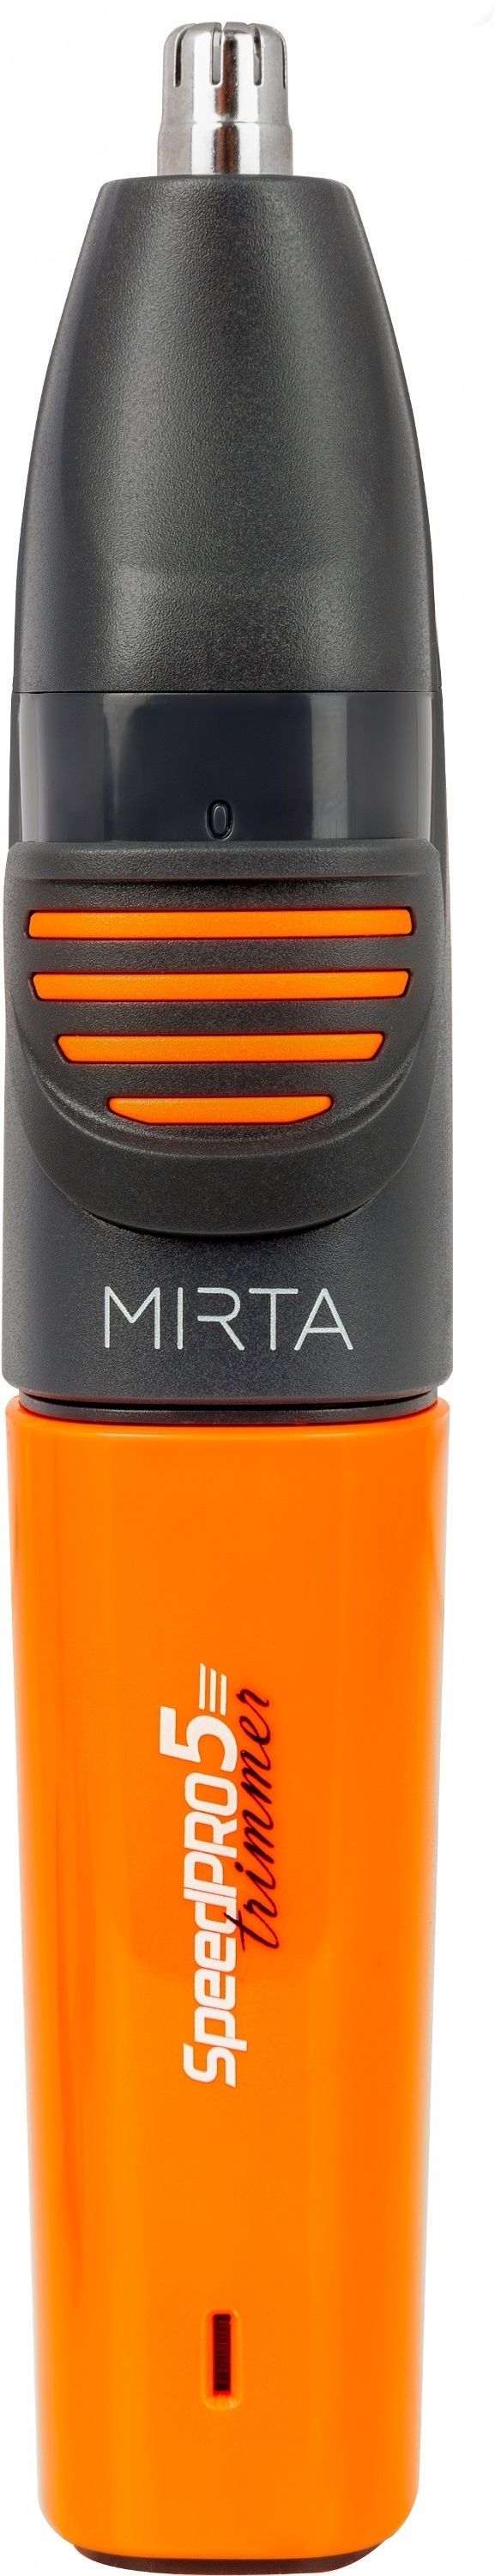 Акція на Тример універсальний MIRTA HT-5216 від Територія твоєї техніки - 8